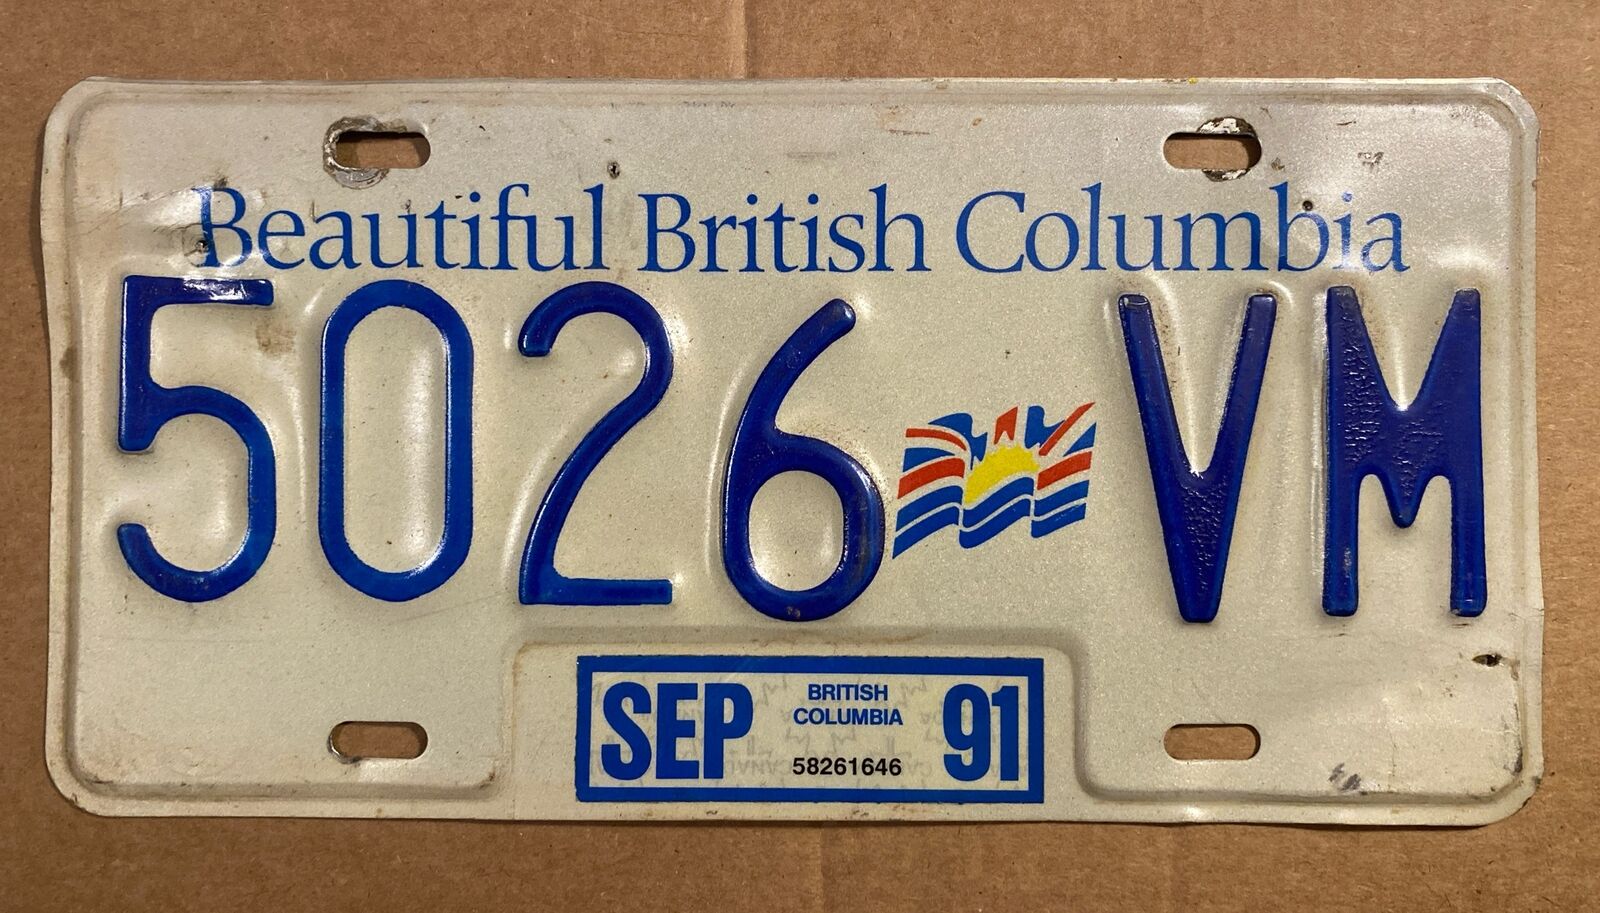 British Columbia Canada license plate, original used